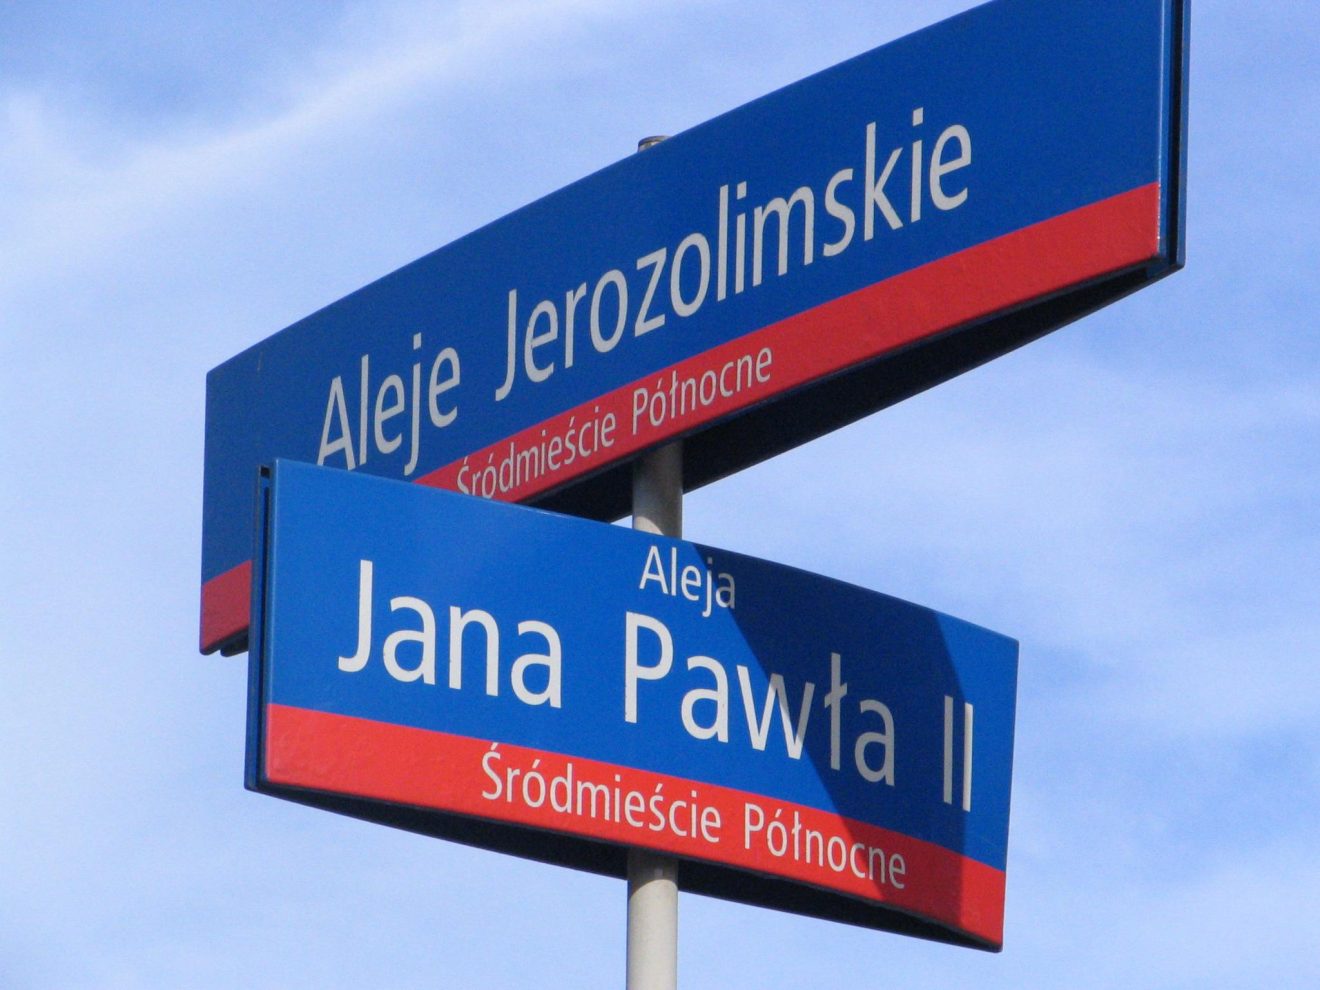 Jan Paweł II wciąż obecny – ulice, szkoły, pomniki, muzea imienia Papieża Polaka